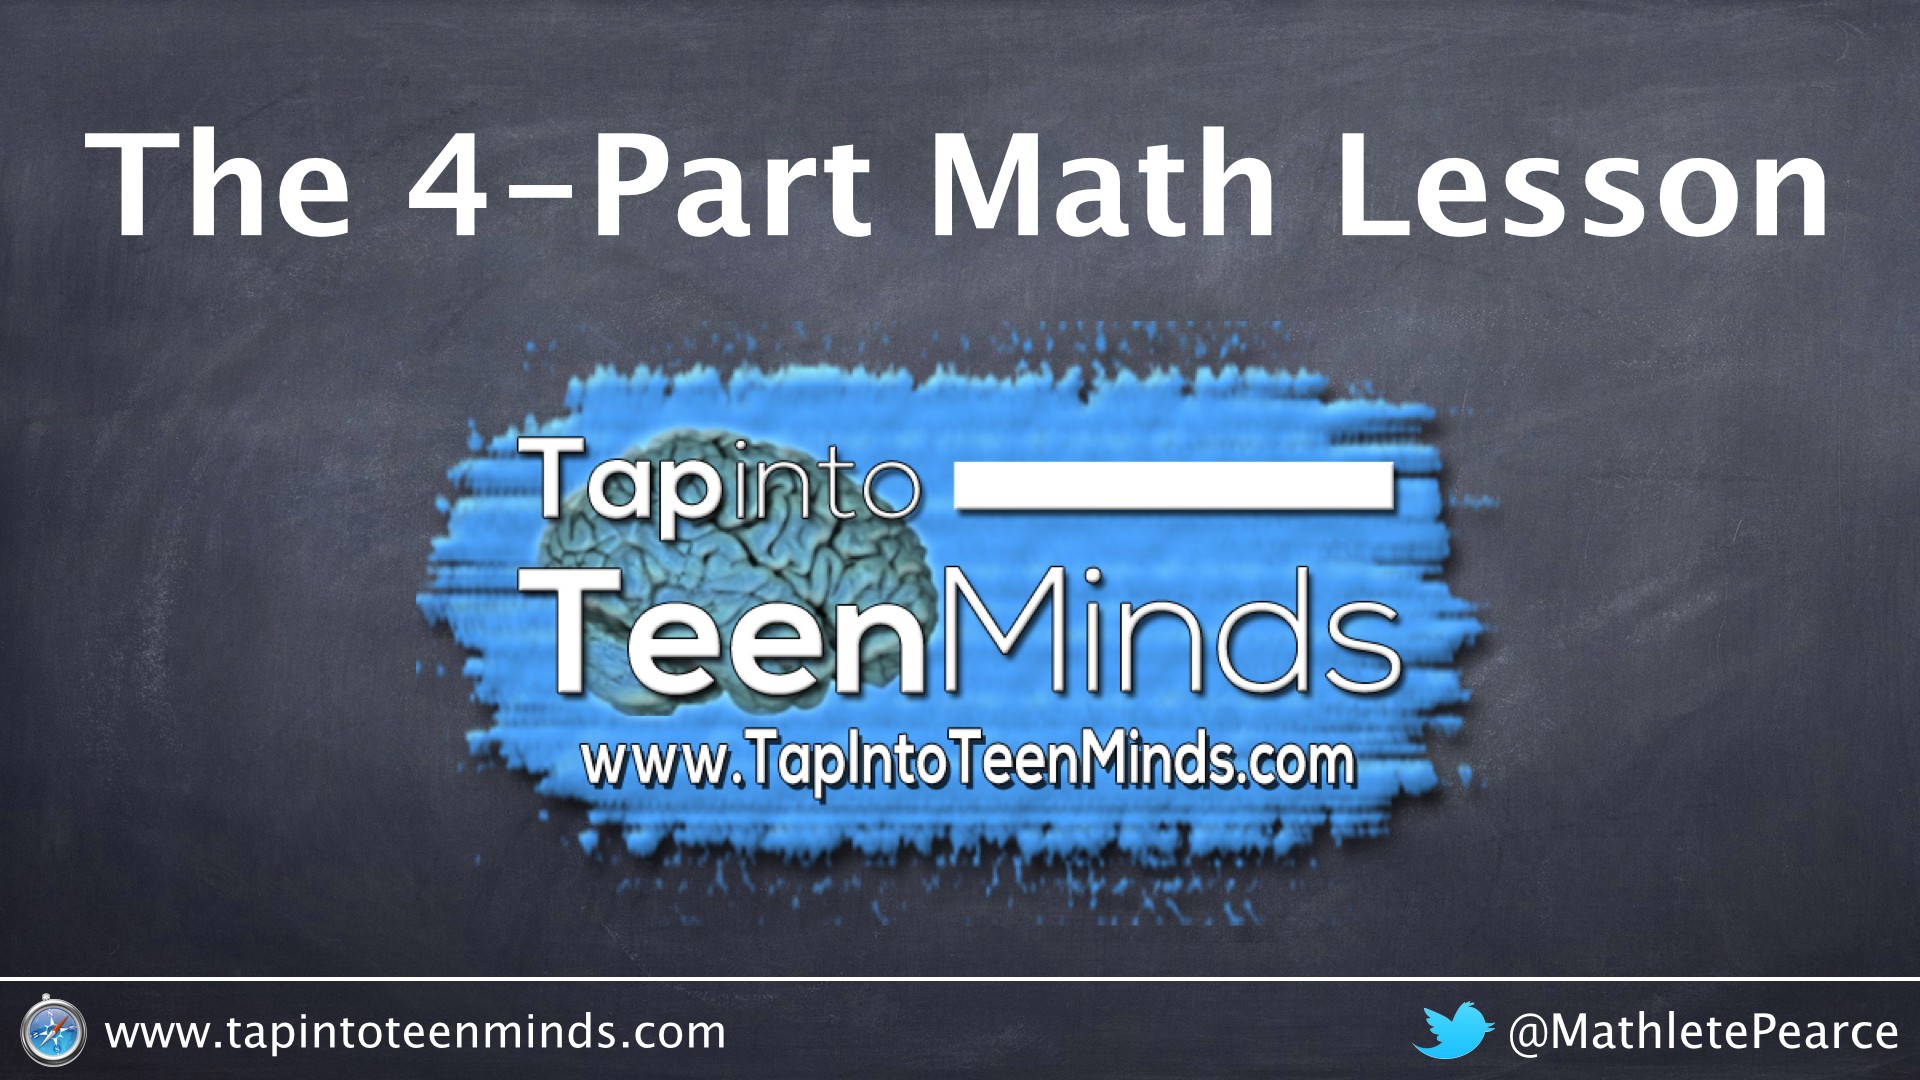 The 4-Part Math Lesson